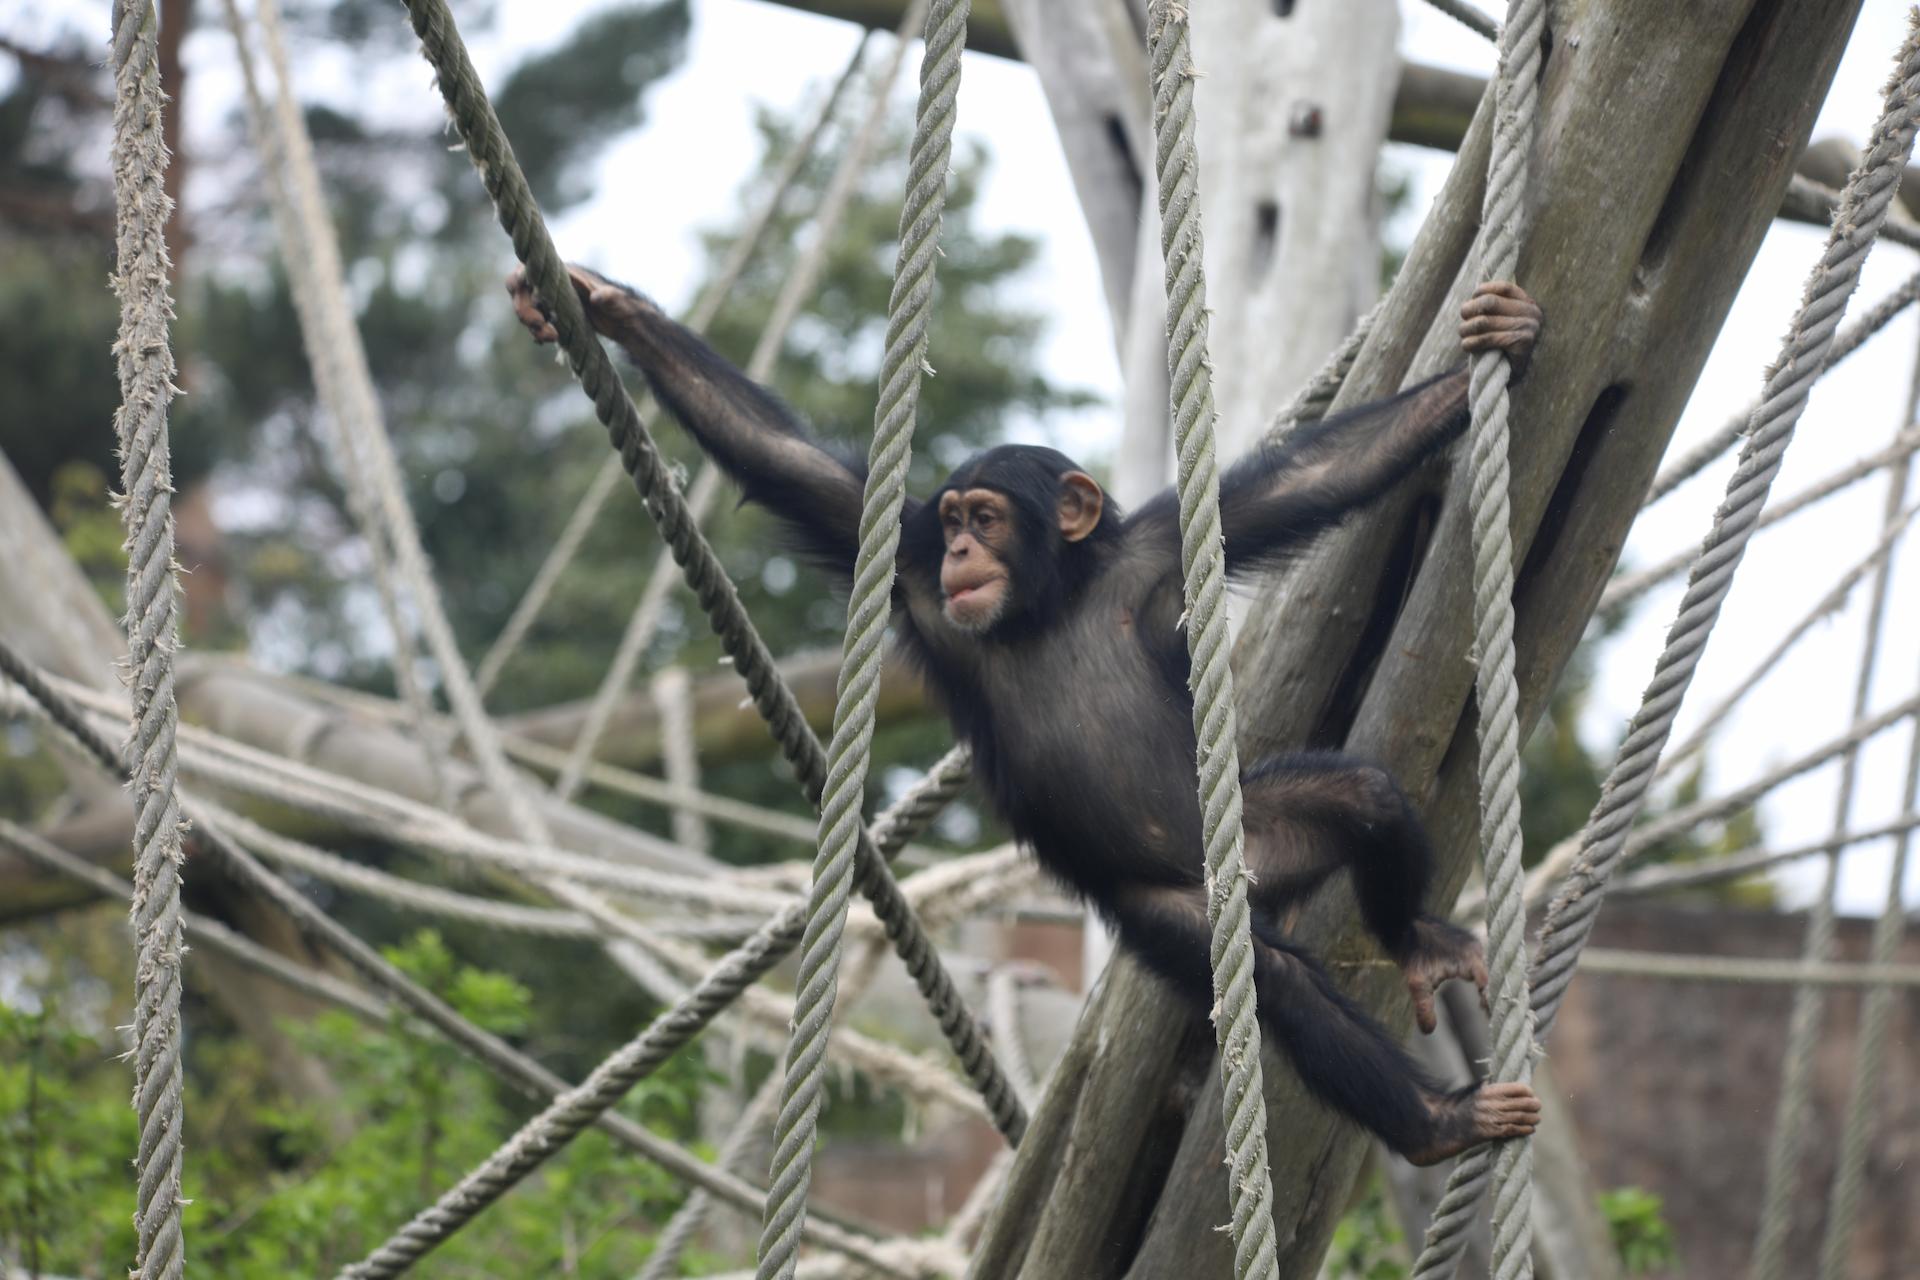 Chimpanzee Masindi swinging through ropes in outdoor Budongo enclosure

Image: AMY MIDDLETON 2023